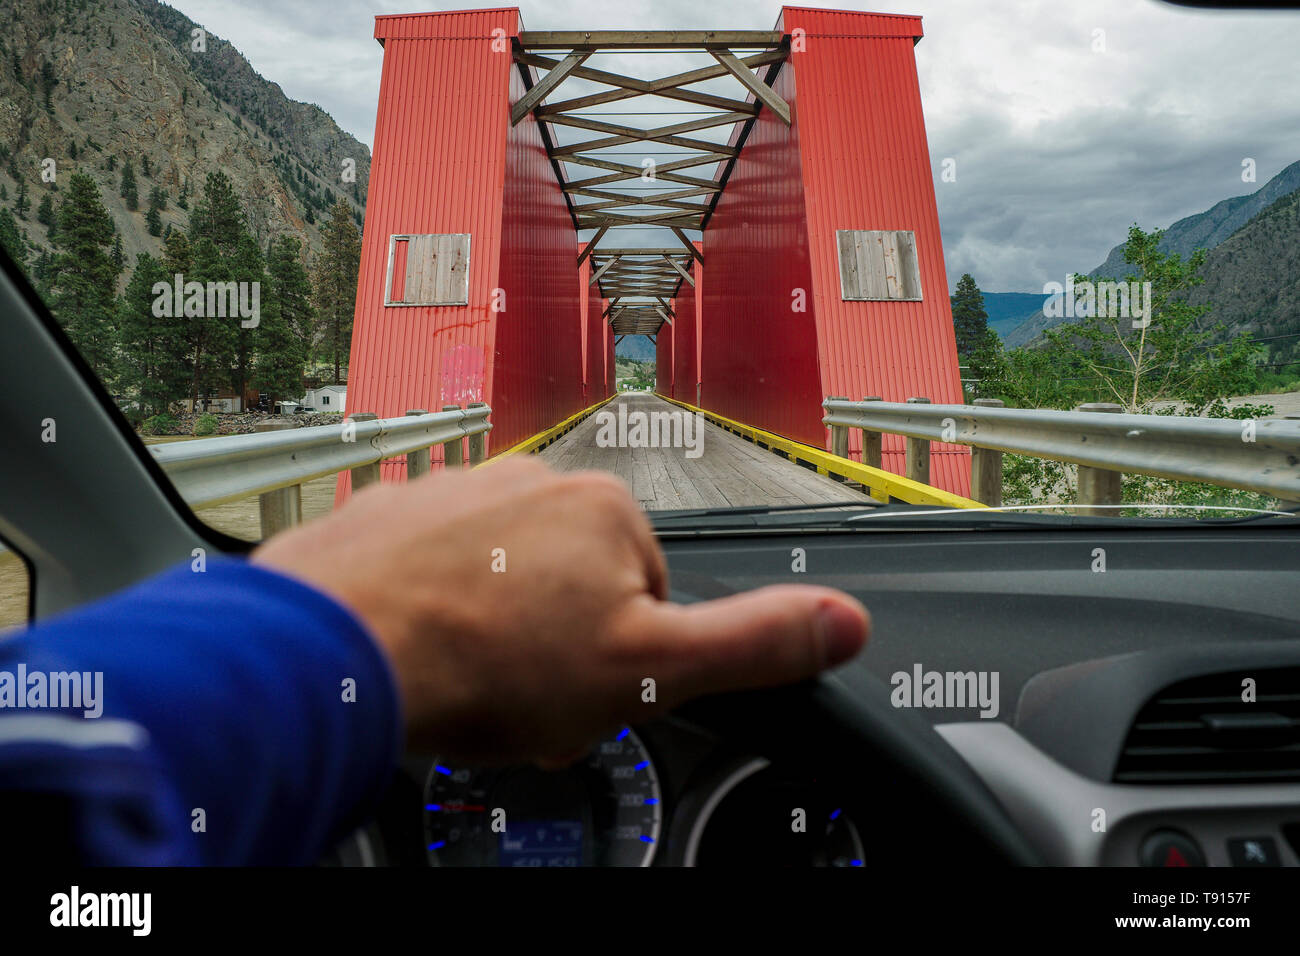 La guida su una singola corsia sul vecchio e storico ponte rosso, Similkameen River Bridge n. 6, in Keremeos, British Columbia, Canada. Foto Stock